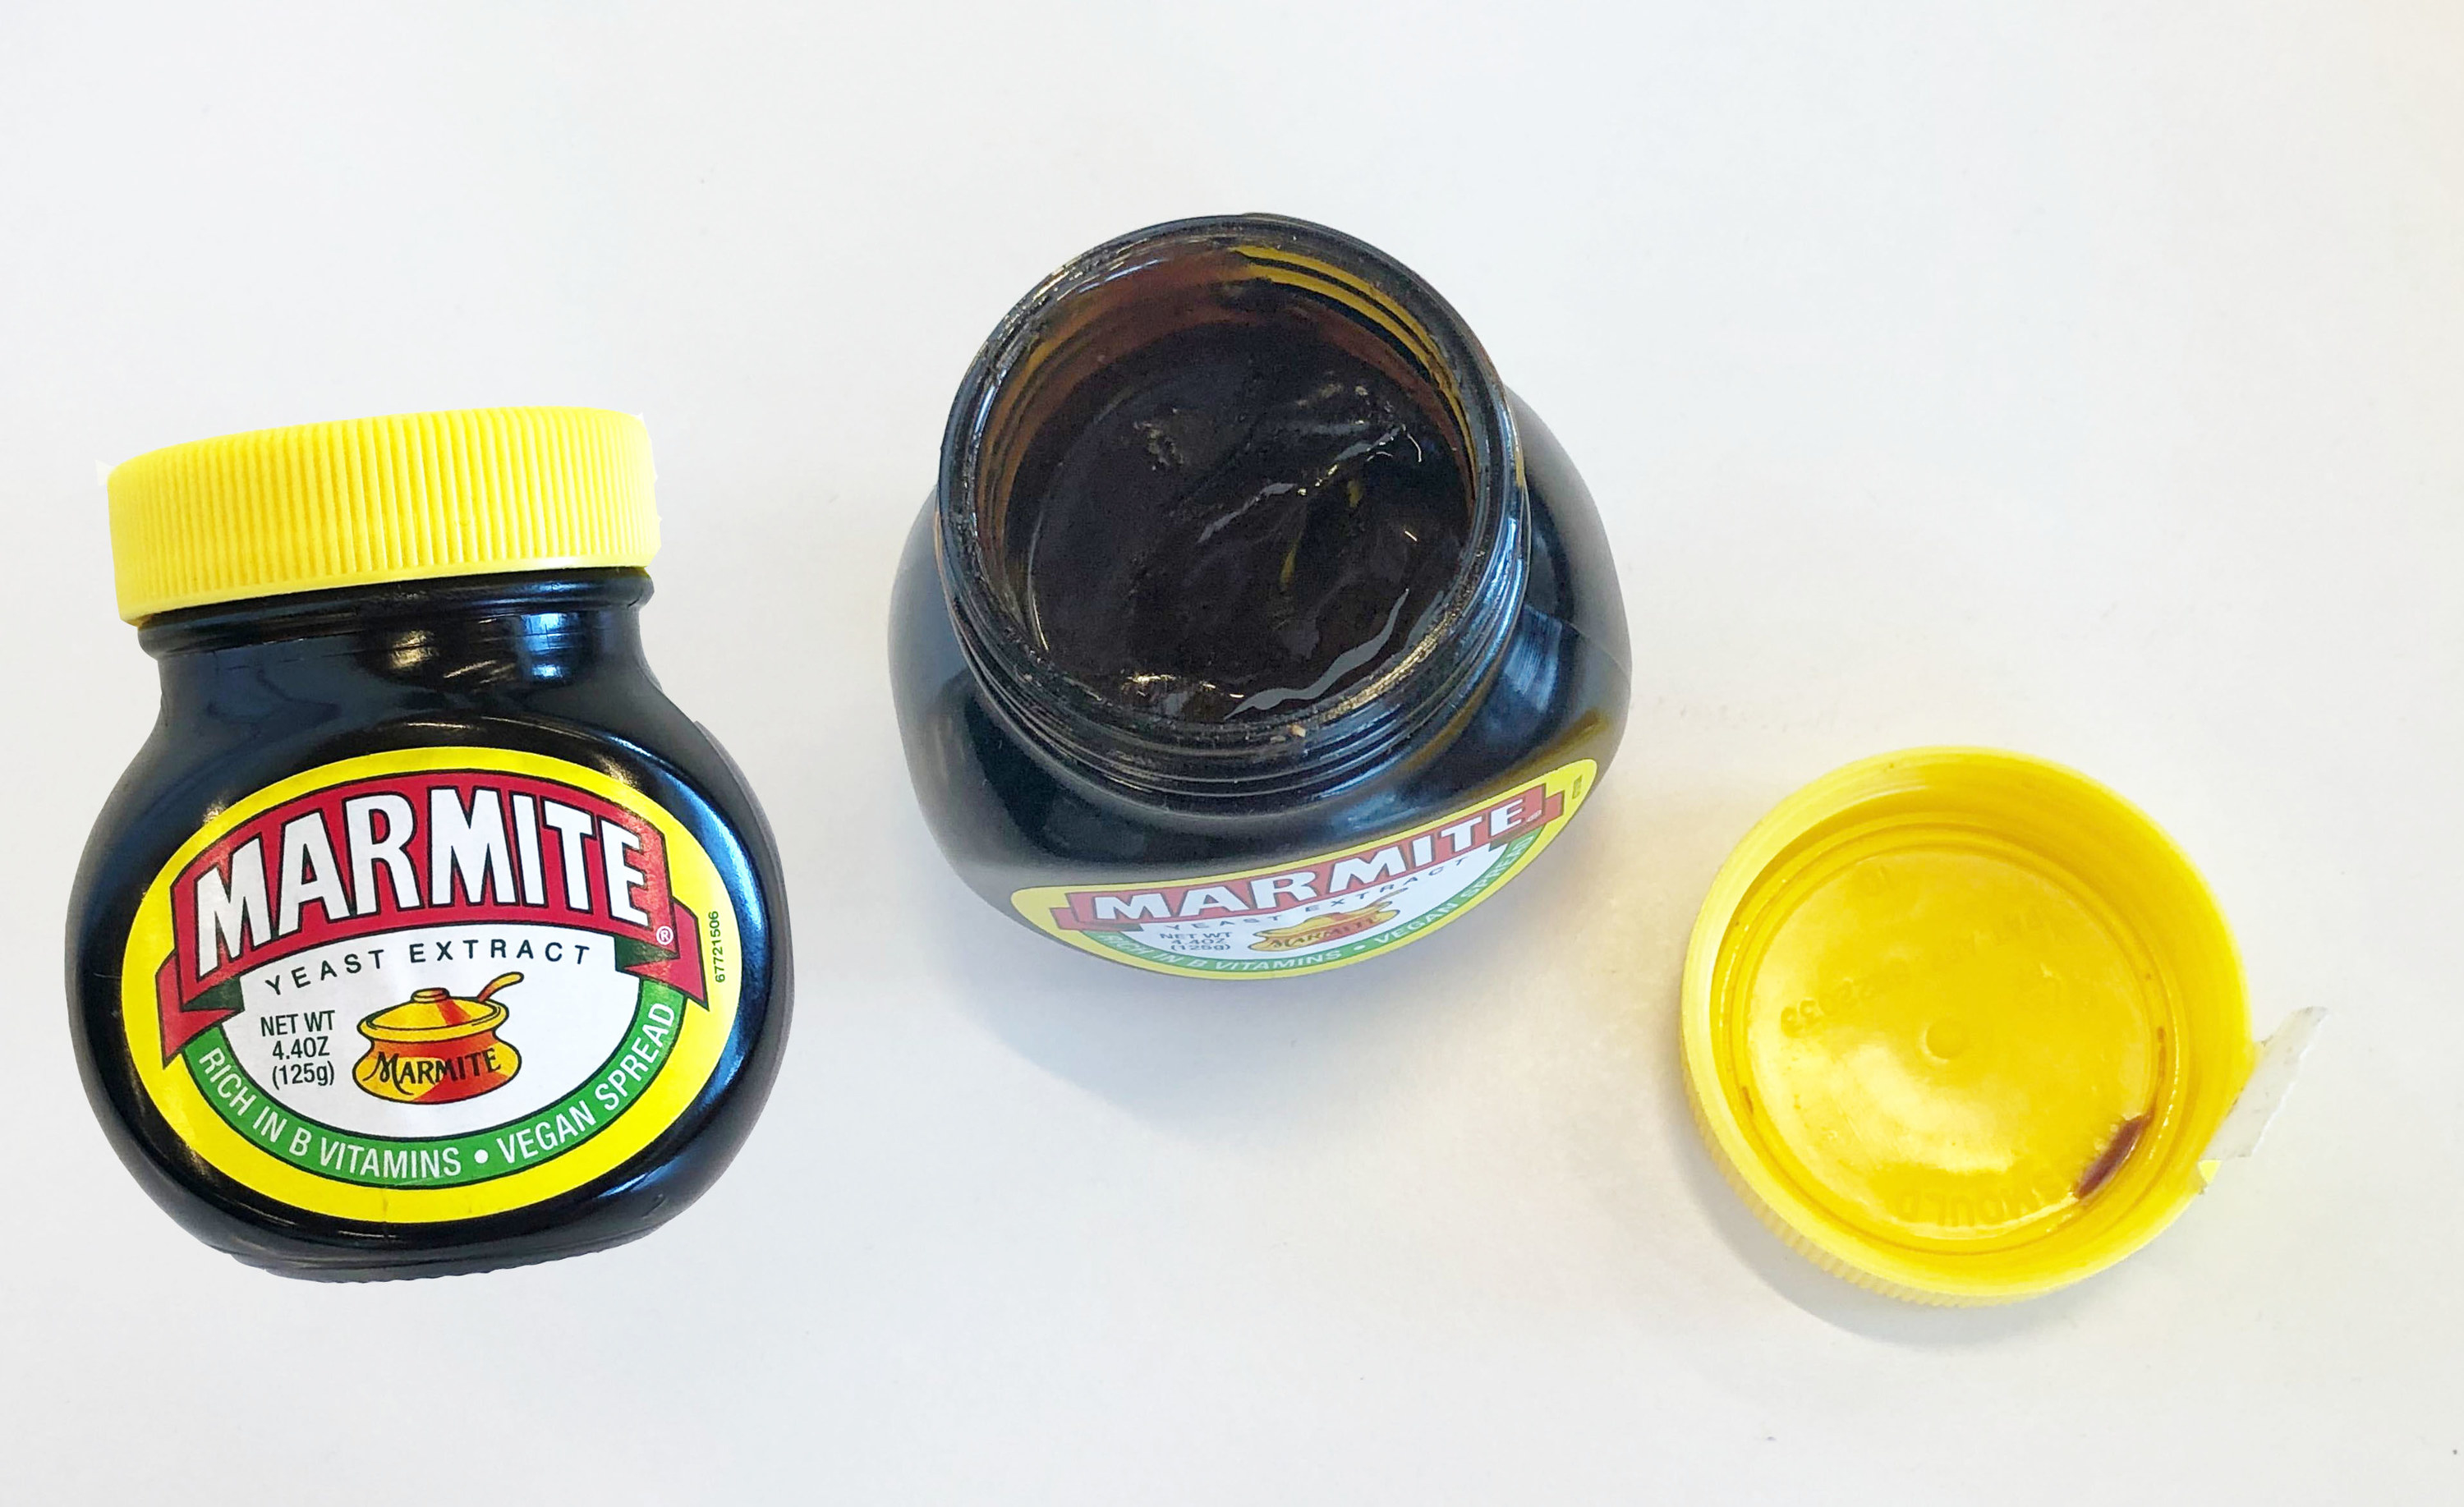 Jars of Marmite